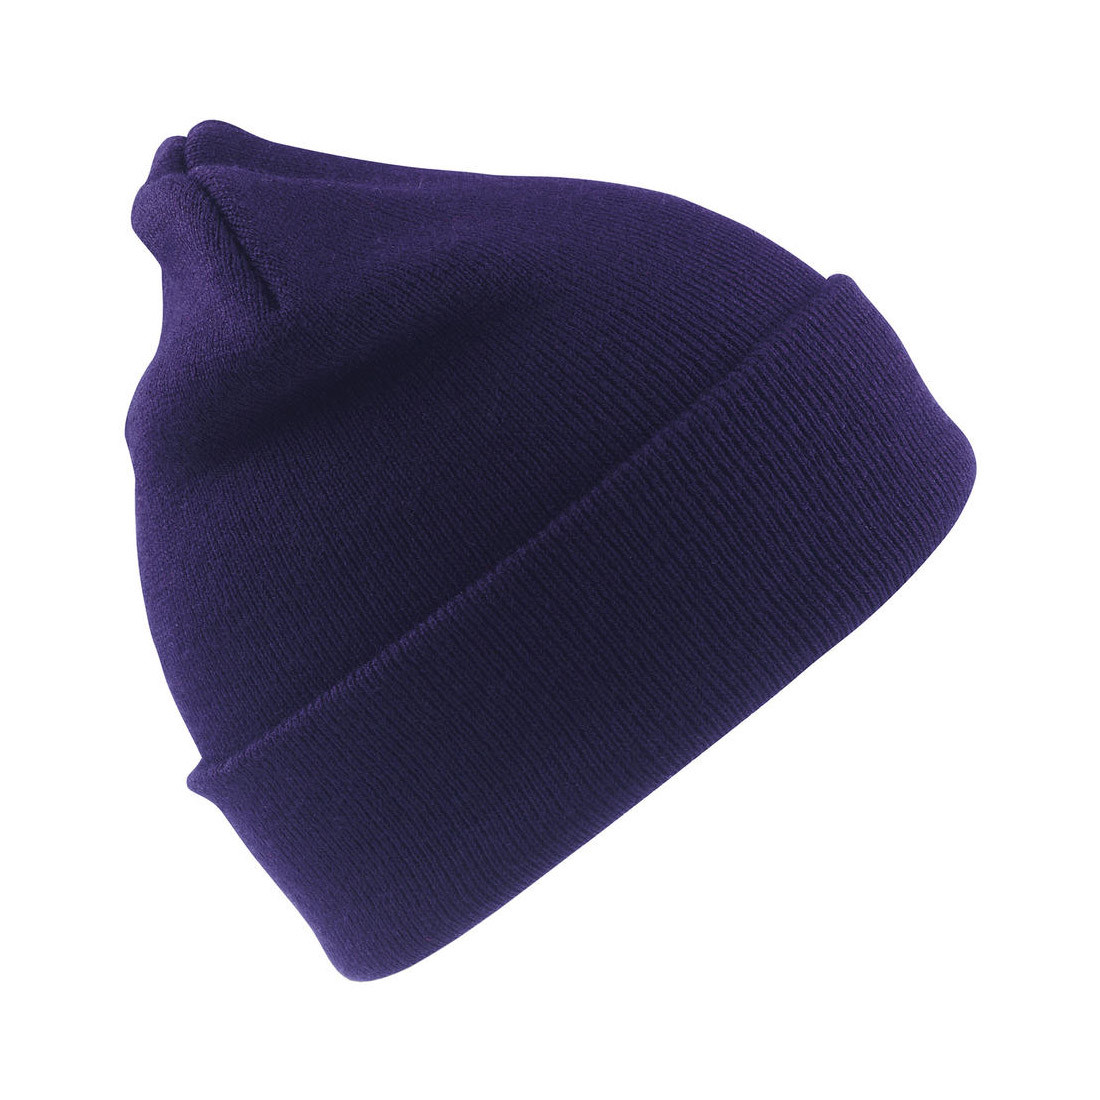 Wolly Ski Cap - Les vêtements de protection